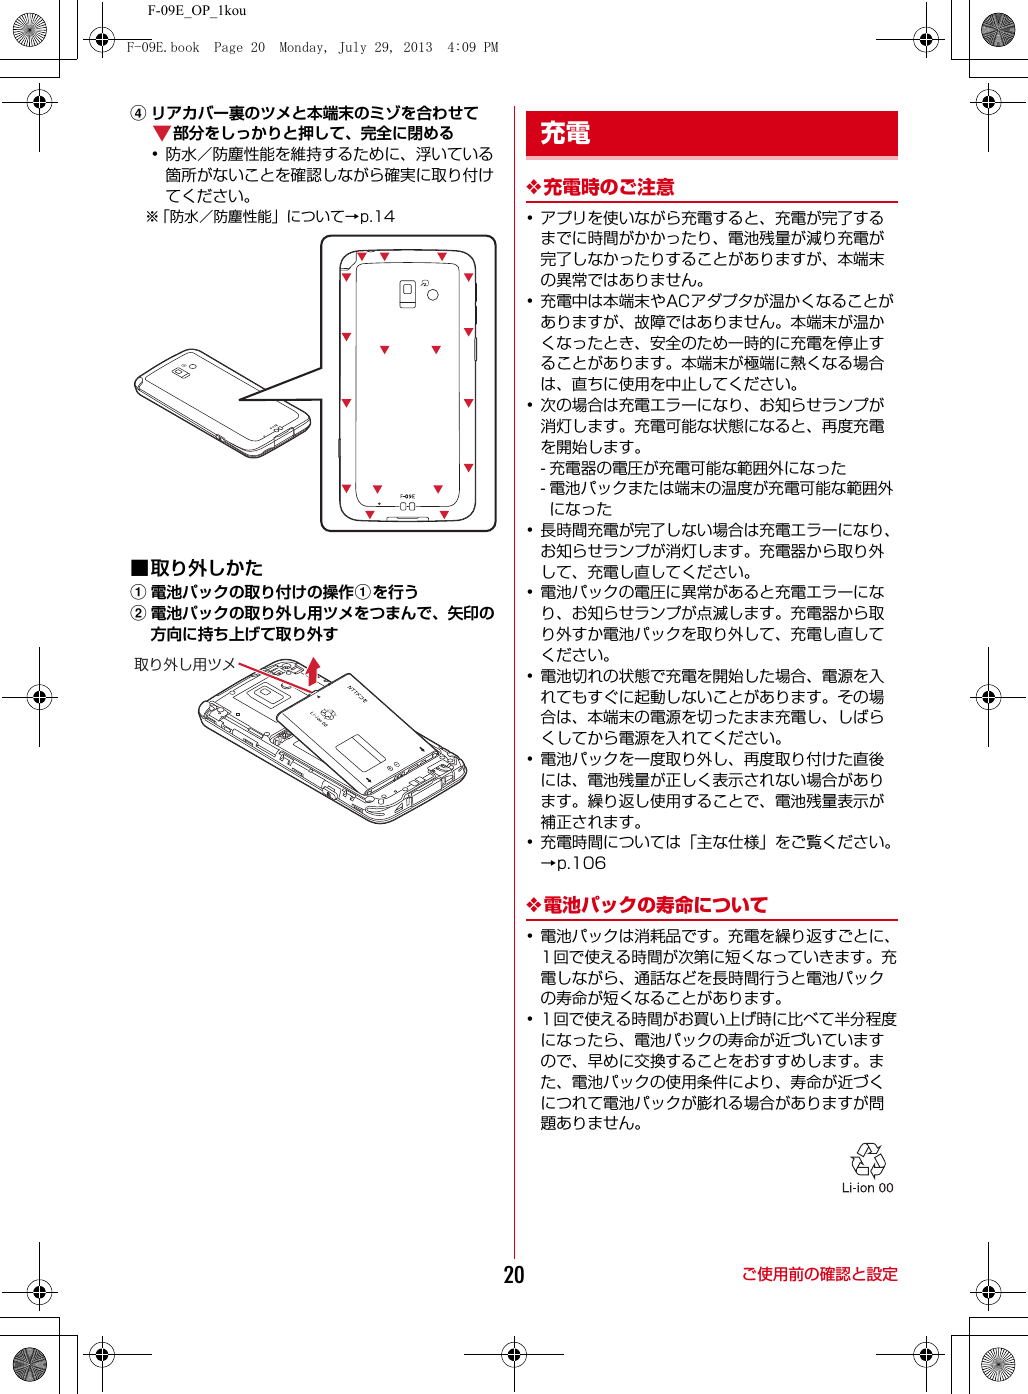 F-09E_OP_1kouご使用前の確認と設定20dリアカバー裏のツメと本端末のミゾを合わせて部分をしっかりと押して、完全に閉める･防水／防塵性能を維持するために、浮いている箇所がないことを確認しながら確実に取り付けてください。※「防水／防塵性能」について→p.14■取り外しかたa電池パックの取り付けの操作aを行うb電池パックの取り外し用ツメをつまんで、矢印の方向に持ち上げて取り外す❖充電時のご注意･アプリを使いながら充電すると、充電が完了するまでに時間がかかったり、電池残量が減り充電が完了しなかったりすることがありますが、本端末の異常ではありません。･充電中は本端末やACアダプタが温かくなることがありますが、故障ではありません。本端末が温かくなったとき、安全のため一時的に充電を停止することがあります。本端末が極端に熱くなる場合は、直ちに使用を中止してください。･次の場合は充電エラーになり、お知らせランプが消灯します。充電可能な状態になると、再度充電を開始します。- 充電器の電圧が充電可能な範囲外になった- 電池パックまたは端末の温度が充電可能な範囲外になった･長時間充電が完了しない場合は充電エラーになり、お知らせランプが消灯します。充電器から取り外して、充電し直してください。･電池パックの電圧に異常があると充電エラーになり、お知らせランプが点滅します。充電器から取り外すか電池パックを取り外して、充電し直してください。･電池切れの状態で充電を開始した場合、電源を入れてもすぐに起動しないことがあります。その場合は、本端末の電源を切ったまま充電し、しばらくしてから電源を入れてください。･電池パックを一度取り外し、再度取り付けた直後には、電池残量が正しく表示されない場合があります。繰り返し使用することで、電池残量表示が補正されます。･充電時間については「主な仕様」をご覧ください。→p.106❖電池パックの寿命について･電池パックは消耗品です。充電を繰り返すごとに、1回で使える時間が次第に短くなっていきます。充電しながら、通話などを長時間行うと電池パックの寿命が短くなることがあります。･1回で使える時間がお買い上げ時に比べて半分程度になったら、電池パックの寿命が近づいていますので、早めに交換することをおすすめします。また、電池パックの使用条件により、寿命が近づくにつれて電池パックが膨れる場合がありますが問題ありません。取り外し用ツメ充電F-09E.book  Page 20  Monday, July 29, 2013  4:09 PM